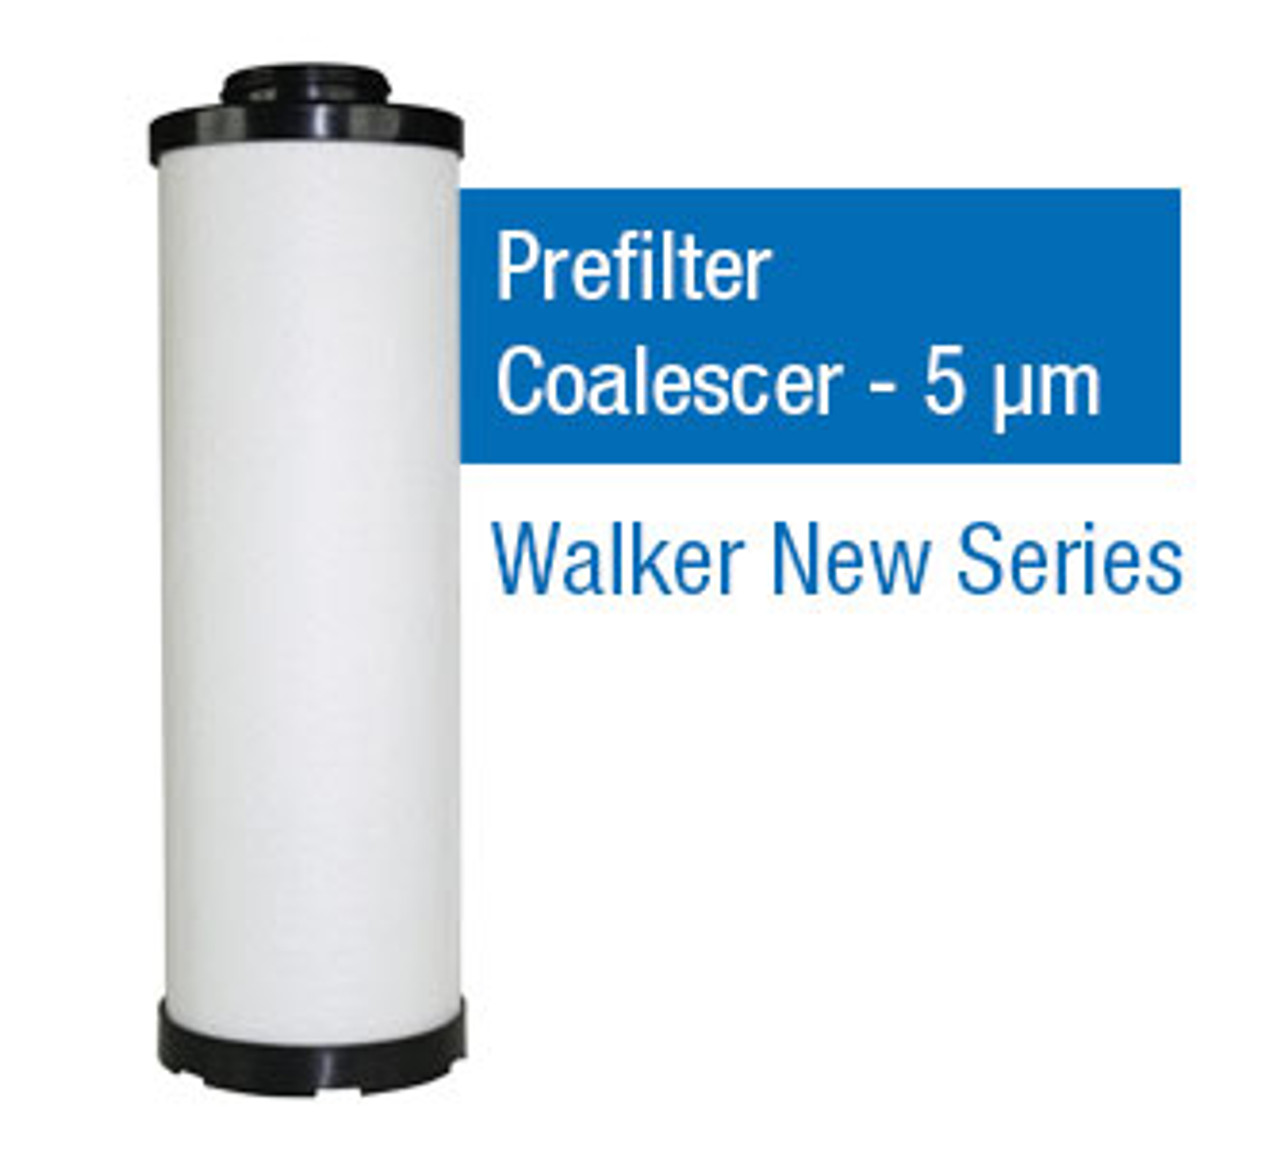 WF0860P - Grade P - Prefilter Coalescer - 5 um (E0860X5/A209X5)